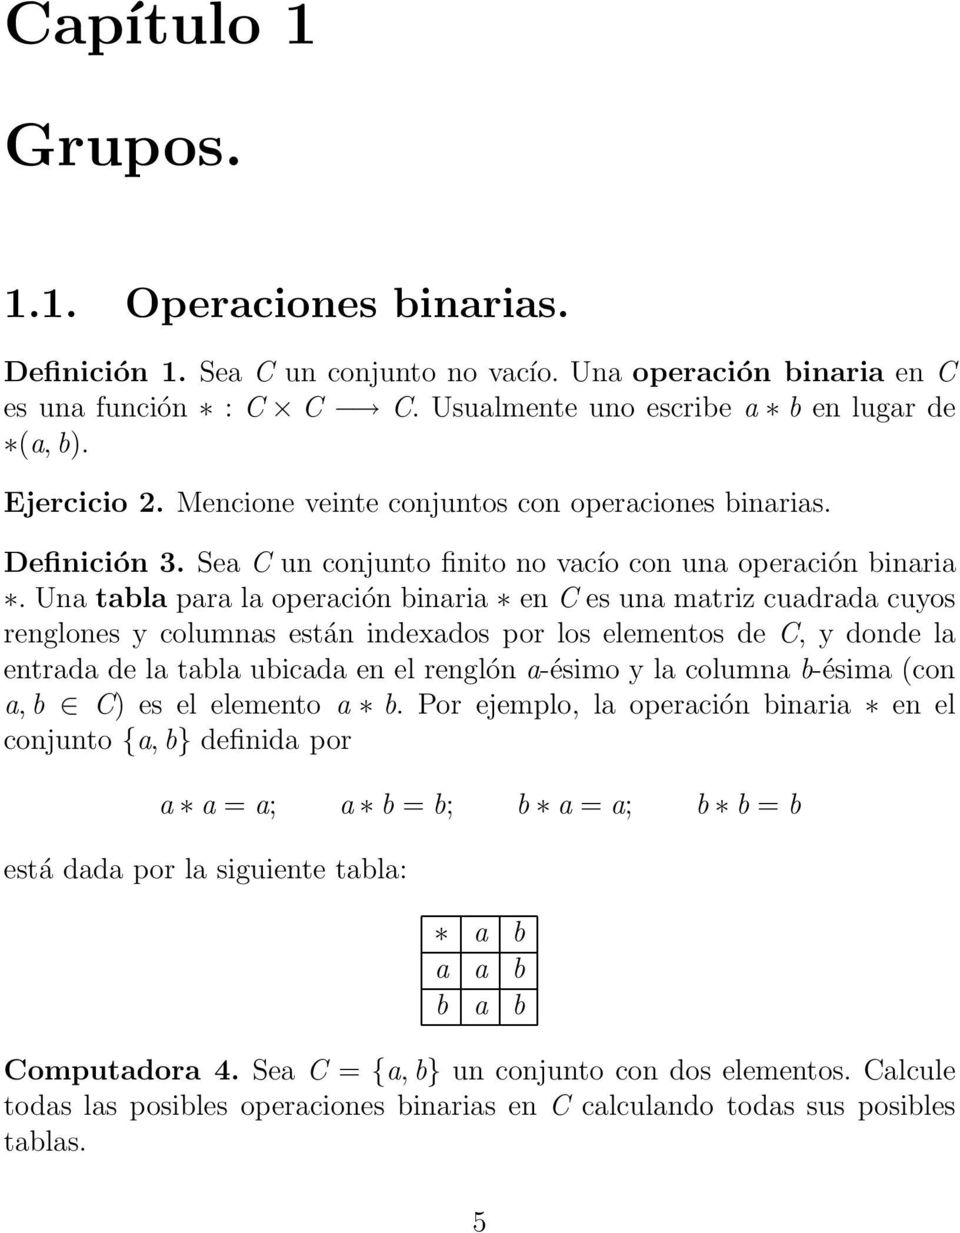 Una tabla para la operación binaria en C es una matriz cuadrada cuyos renglones y columnas están indexados por los elementos de C, y donde la entrada de la tabla ubicada en el renglón a-ésimo y la